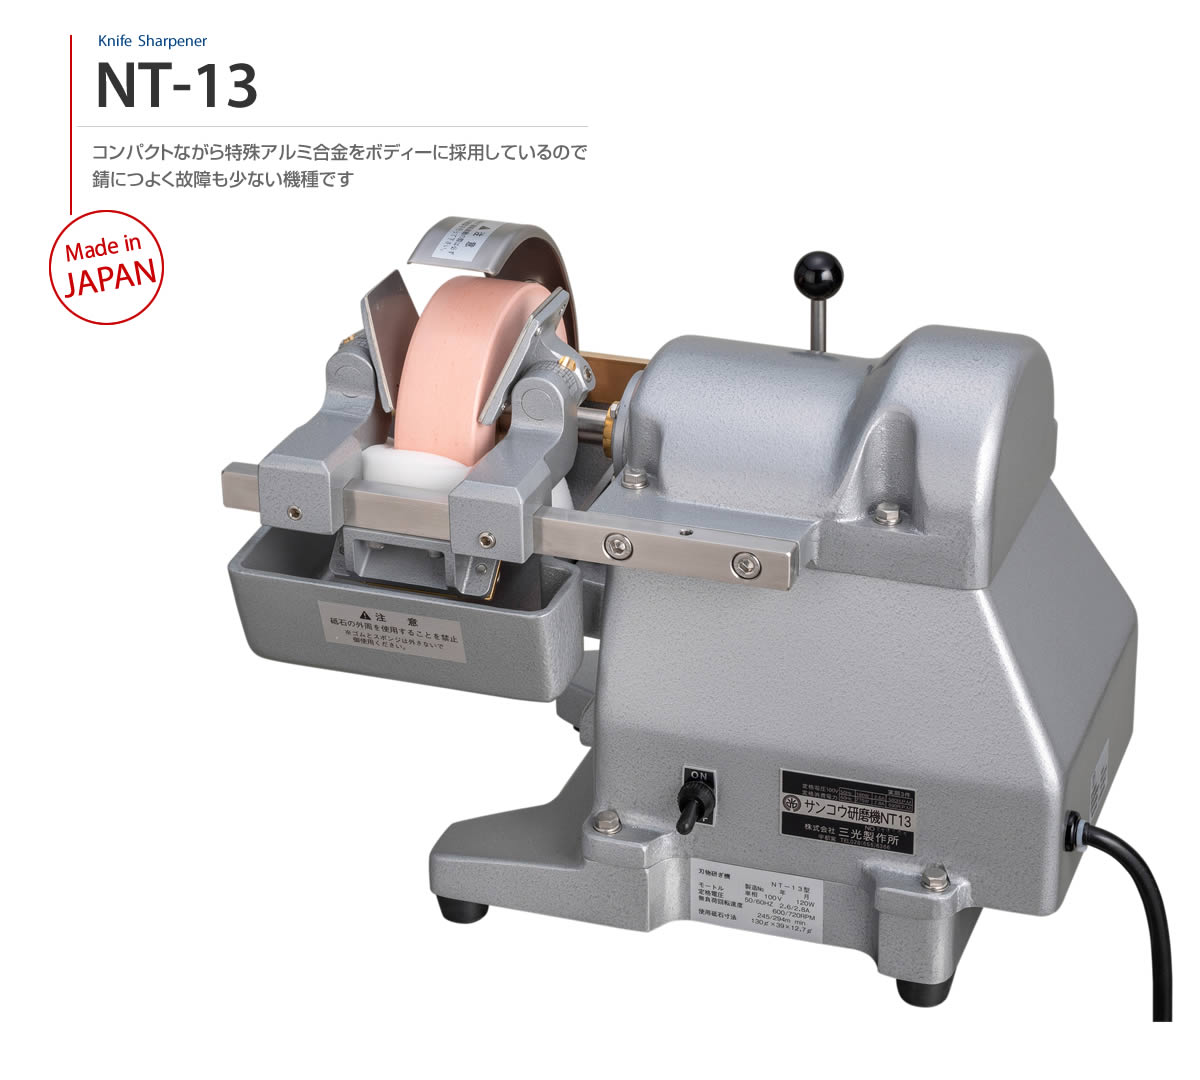 Model NT-13　コンパクトながら特殊アルミ合金をボディーに採用しているので、錆につよく故障も少ない機種です Made in JAPAN